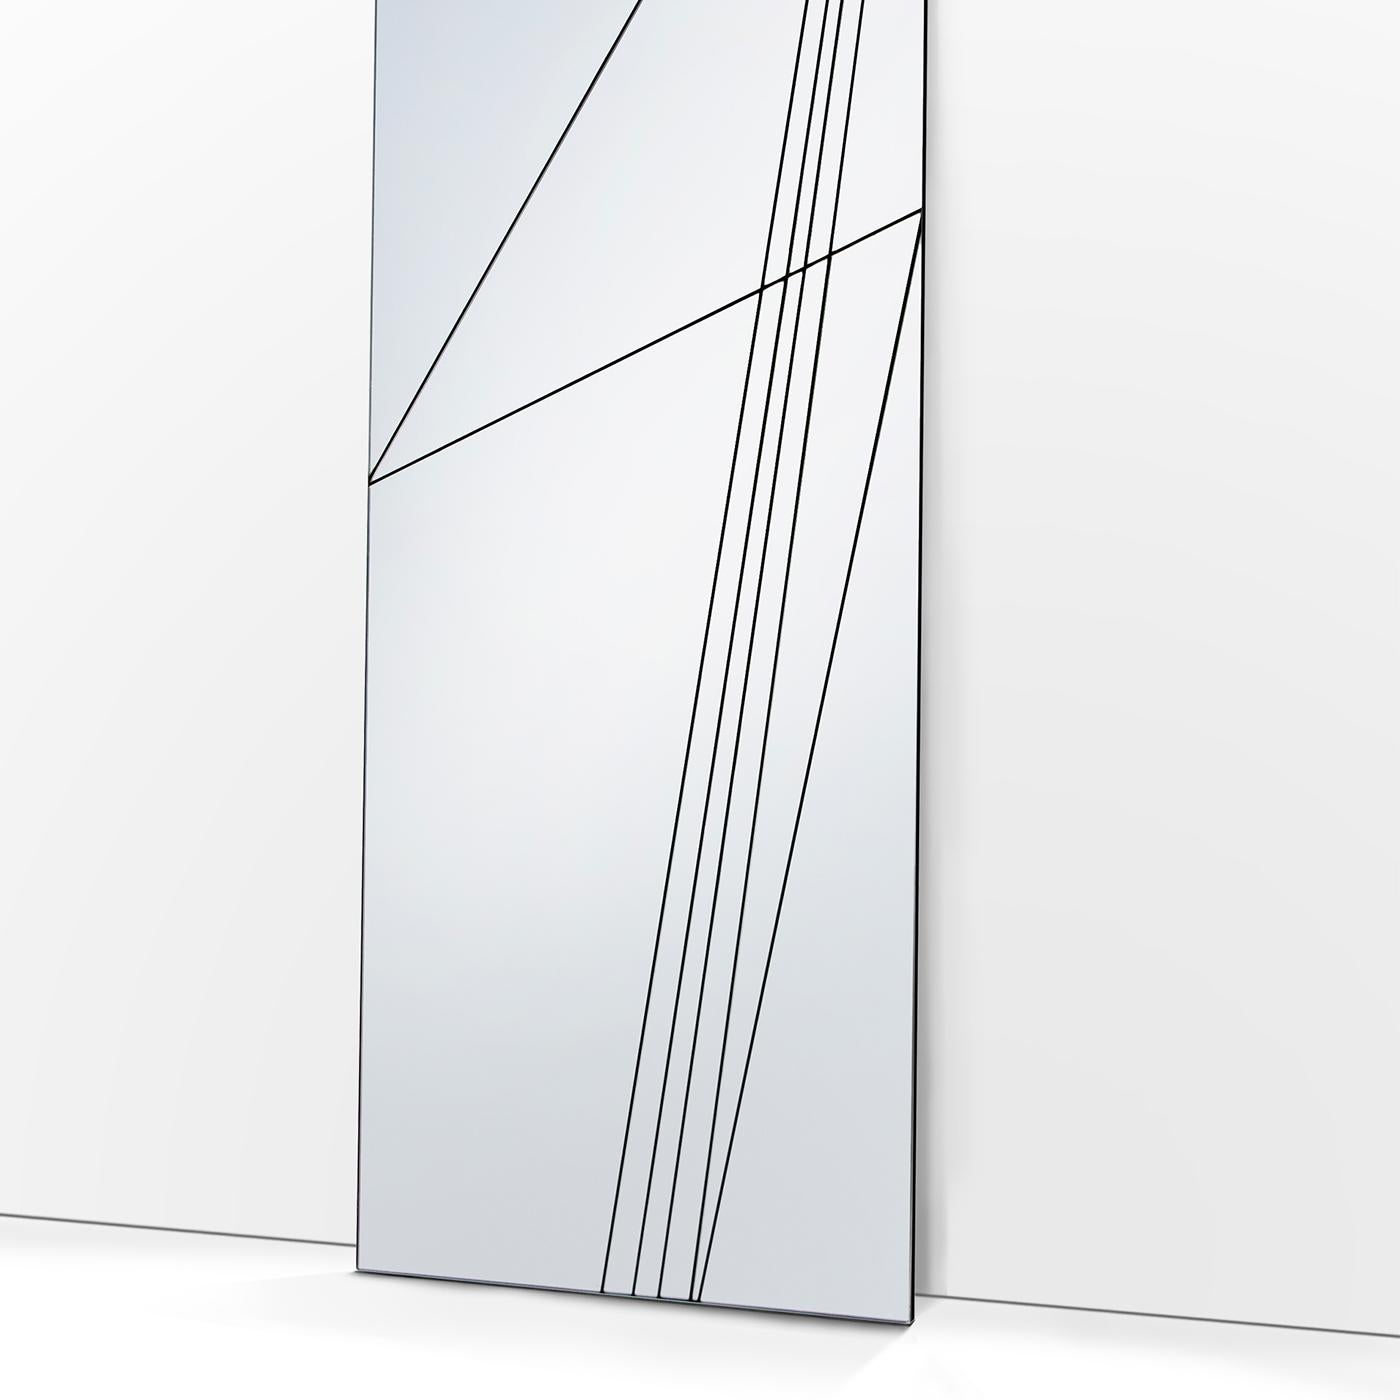 Faisant partie de la collection Via, ce miroir de sol rectangulaire crée des reflets captivants avec l'environnement qui l'entoure. Sa géométrie rigoureuse est animée par une série de découpes à la surface qui évoquent un paysage linéaire rappelant